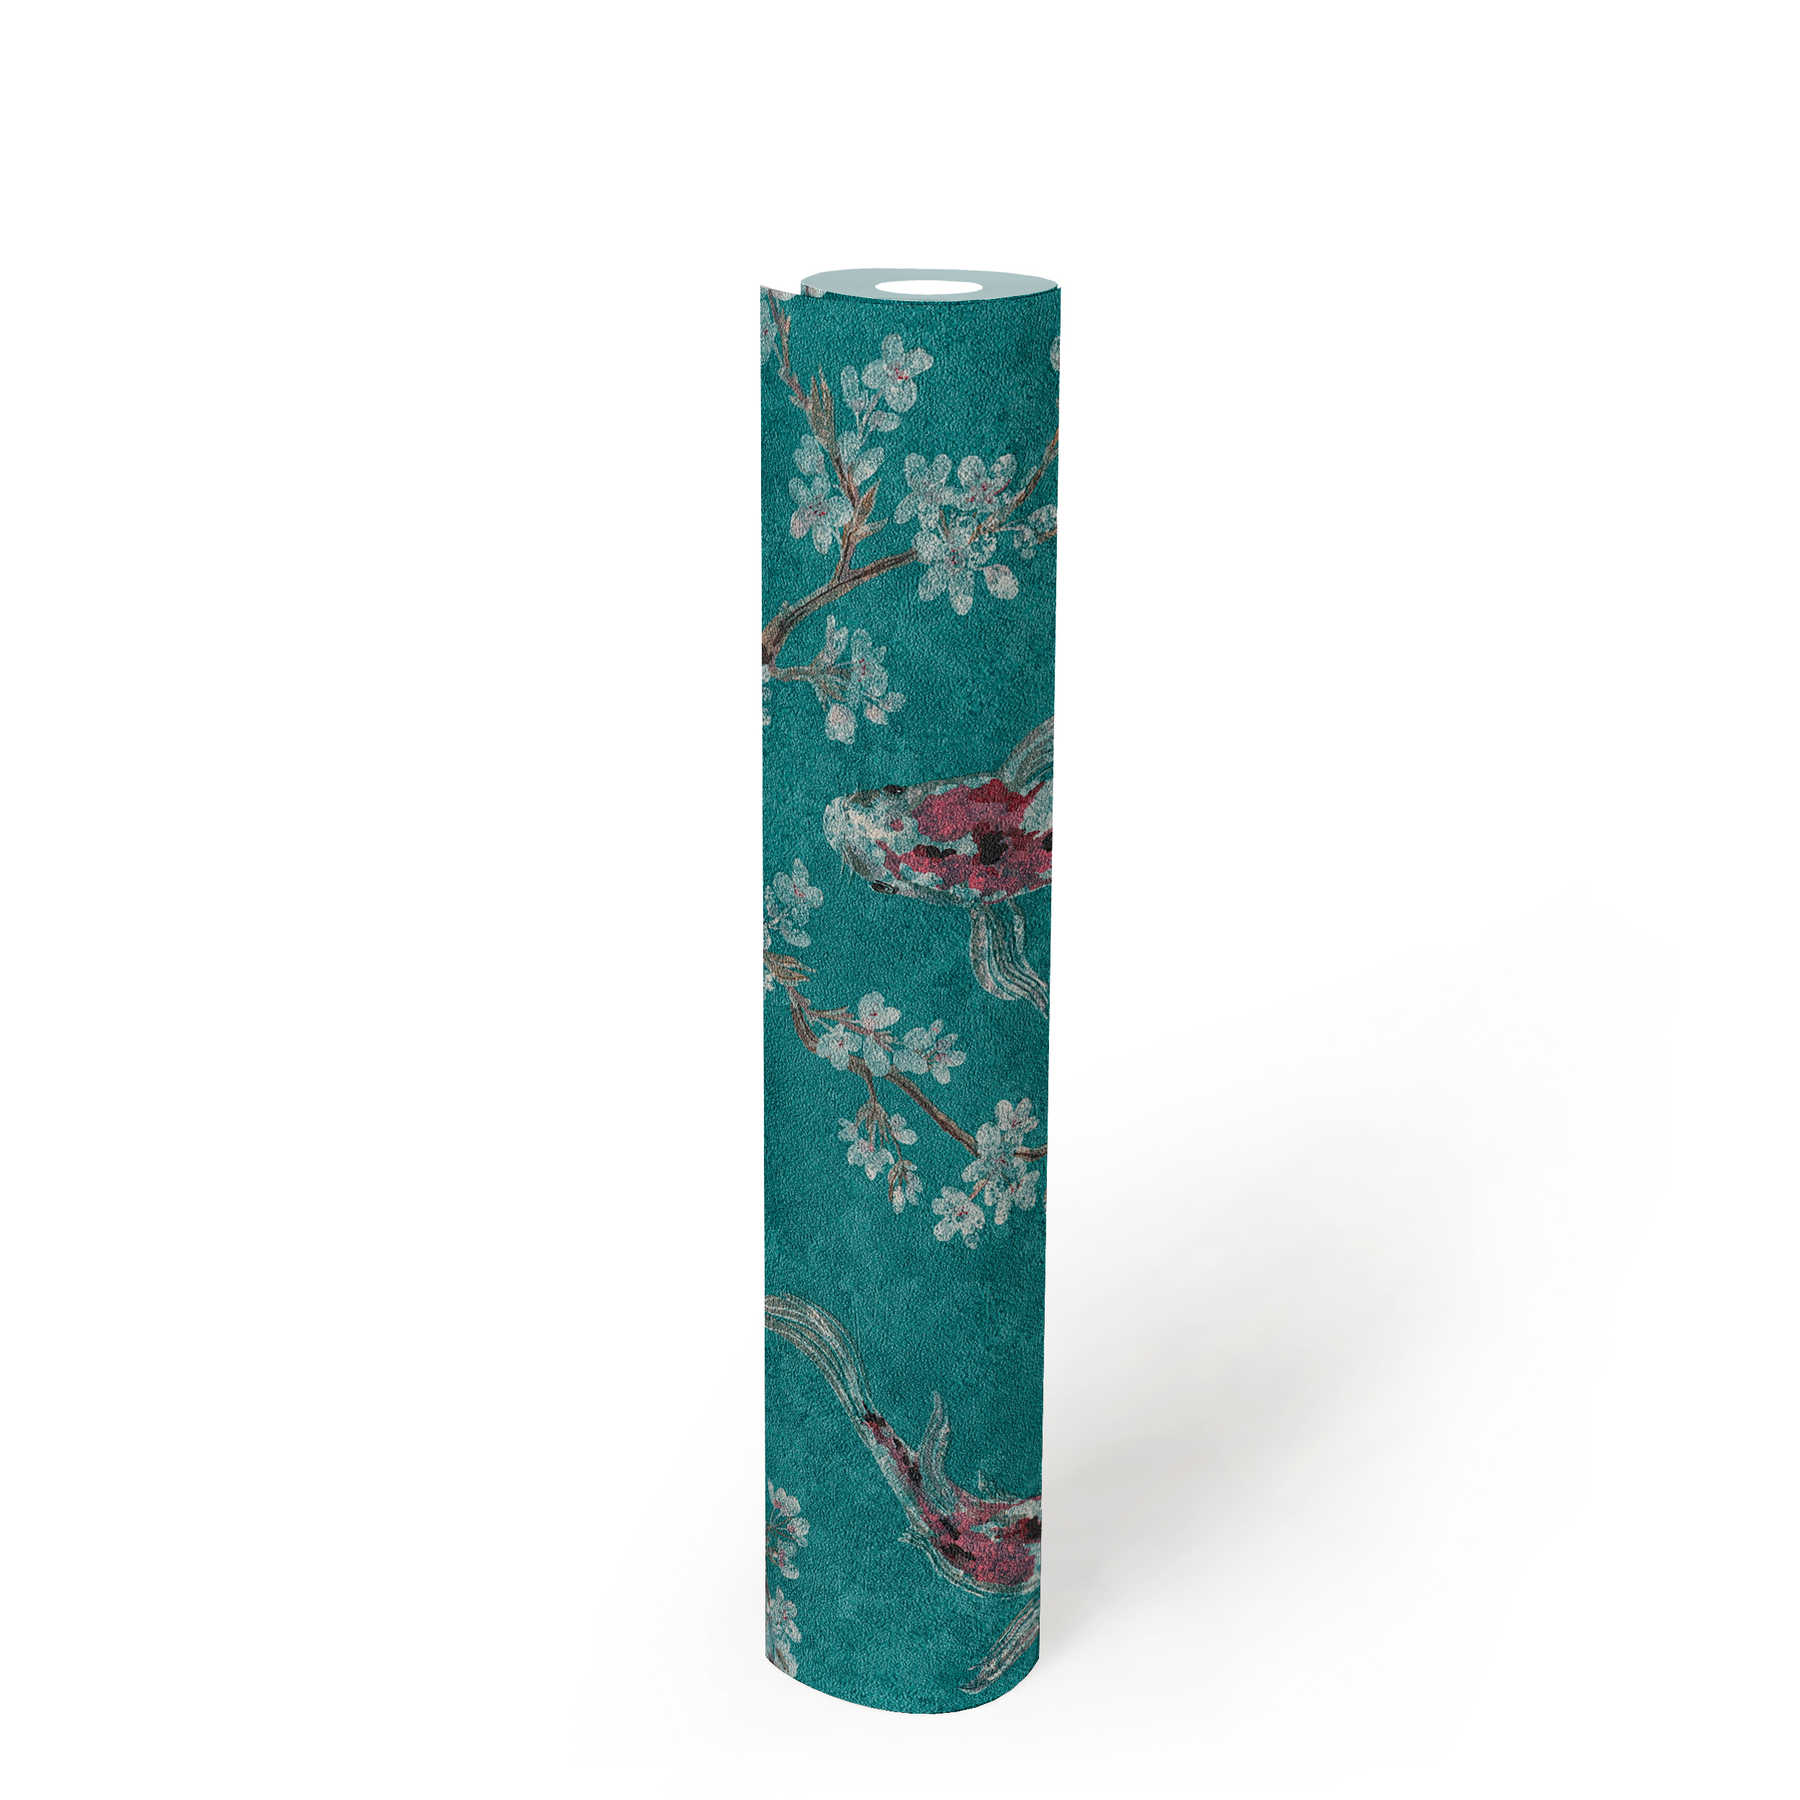             Vliestapete mit Koi-Muster im asiatischen Stil – Blau, Grün, Rot
        